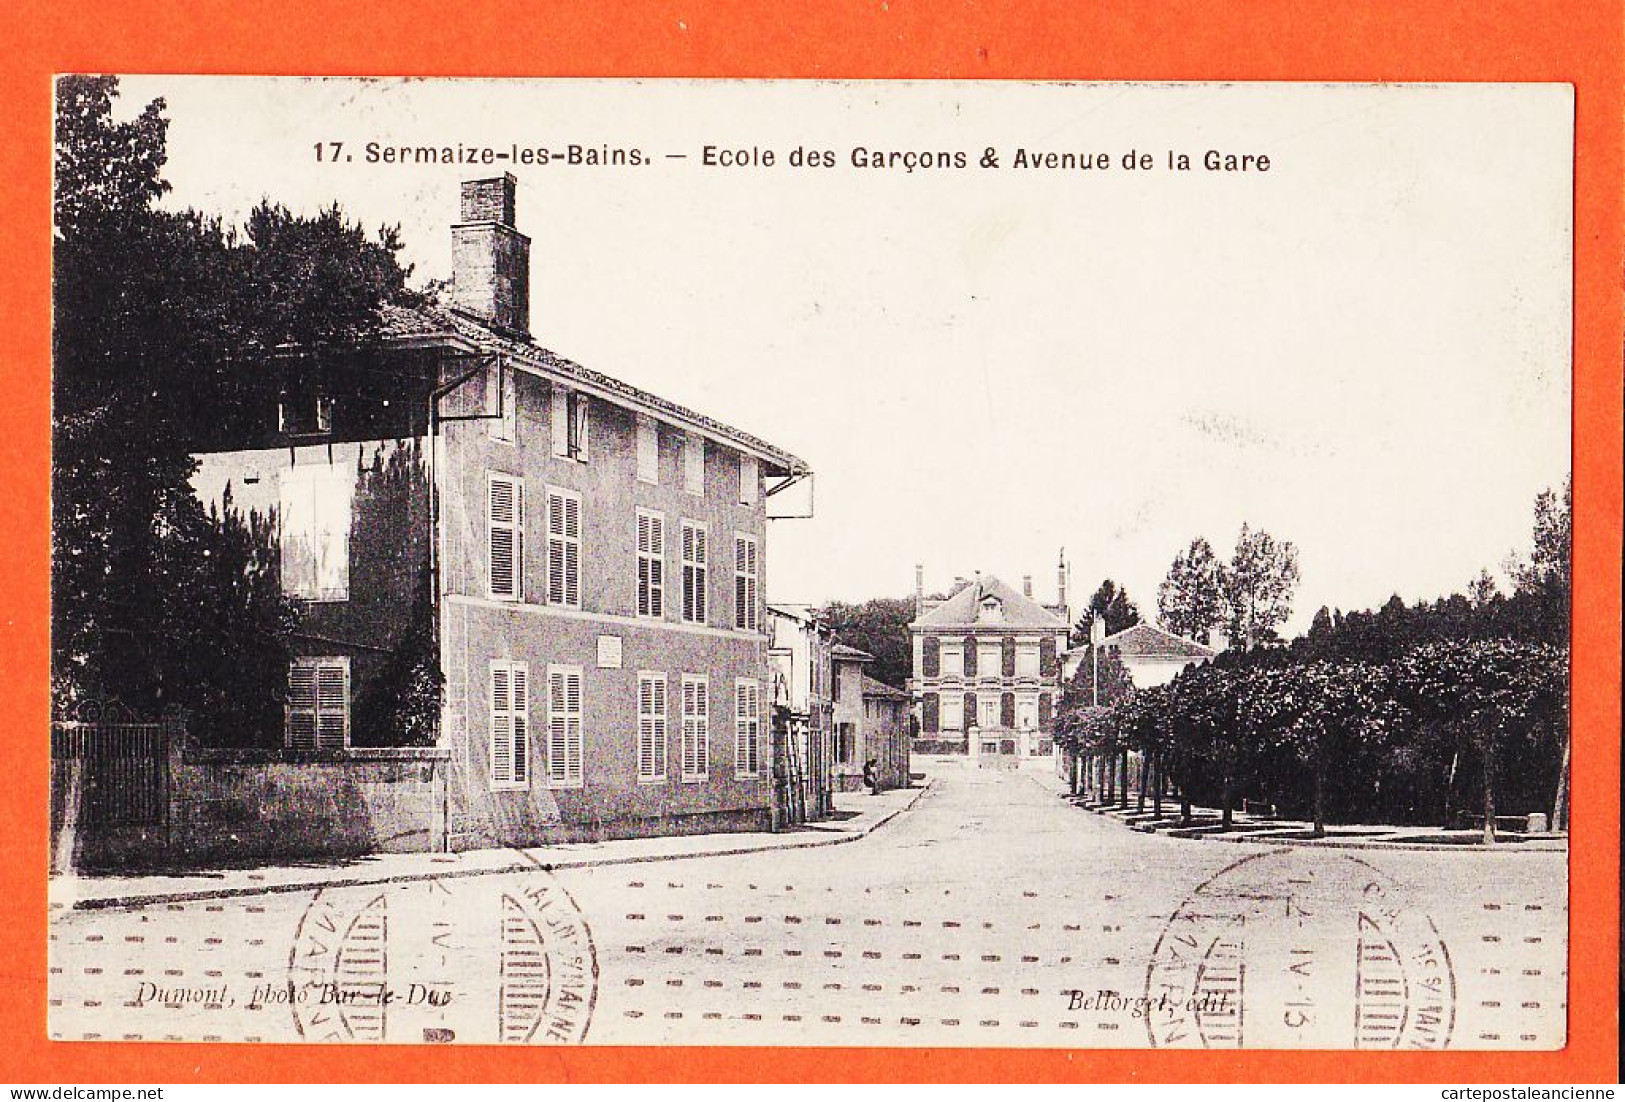 26370 / ⭐ ♥️ SERMAIZE-les-BAINS 51-Marne Ecole GARCONS Avenue GARE 1913 à Gabrielle BARBILLAT Langres-DUMONT BELLORGET - Sermaize-les-Bains